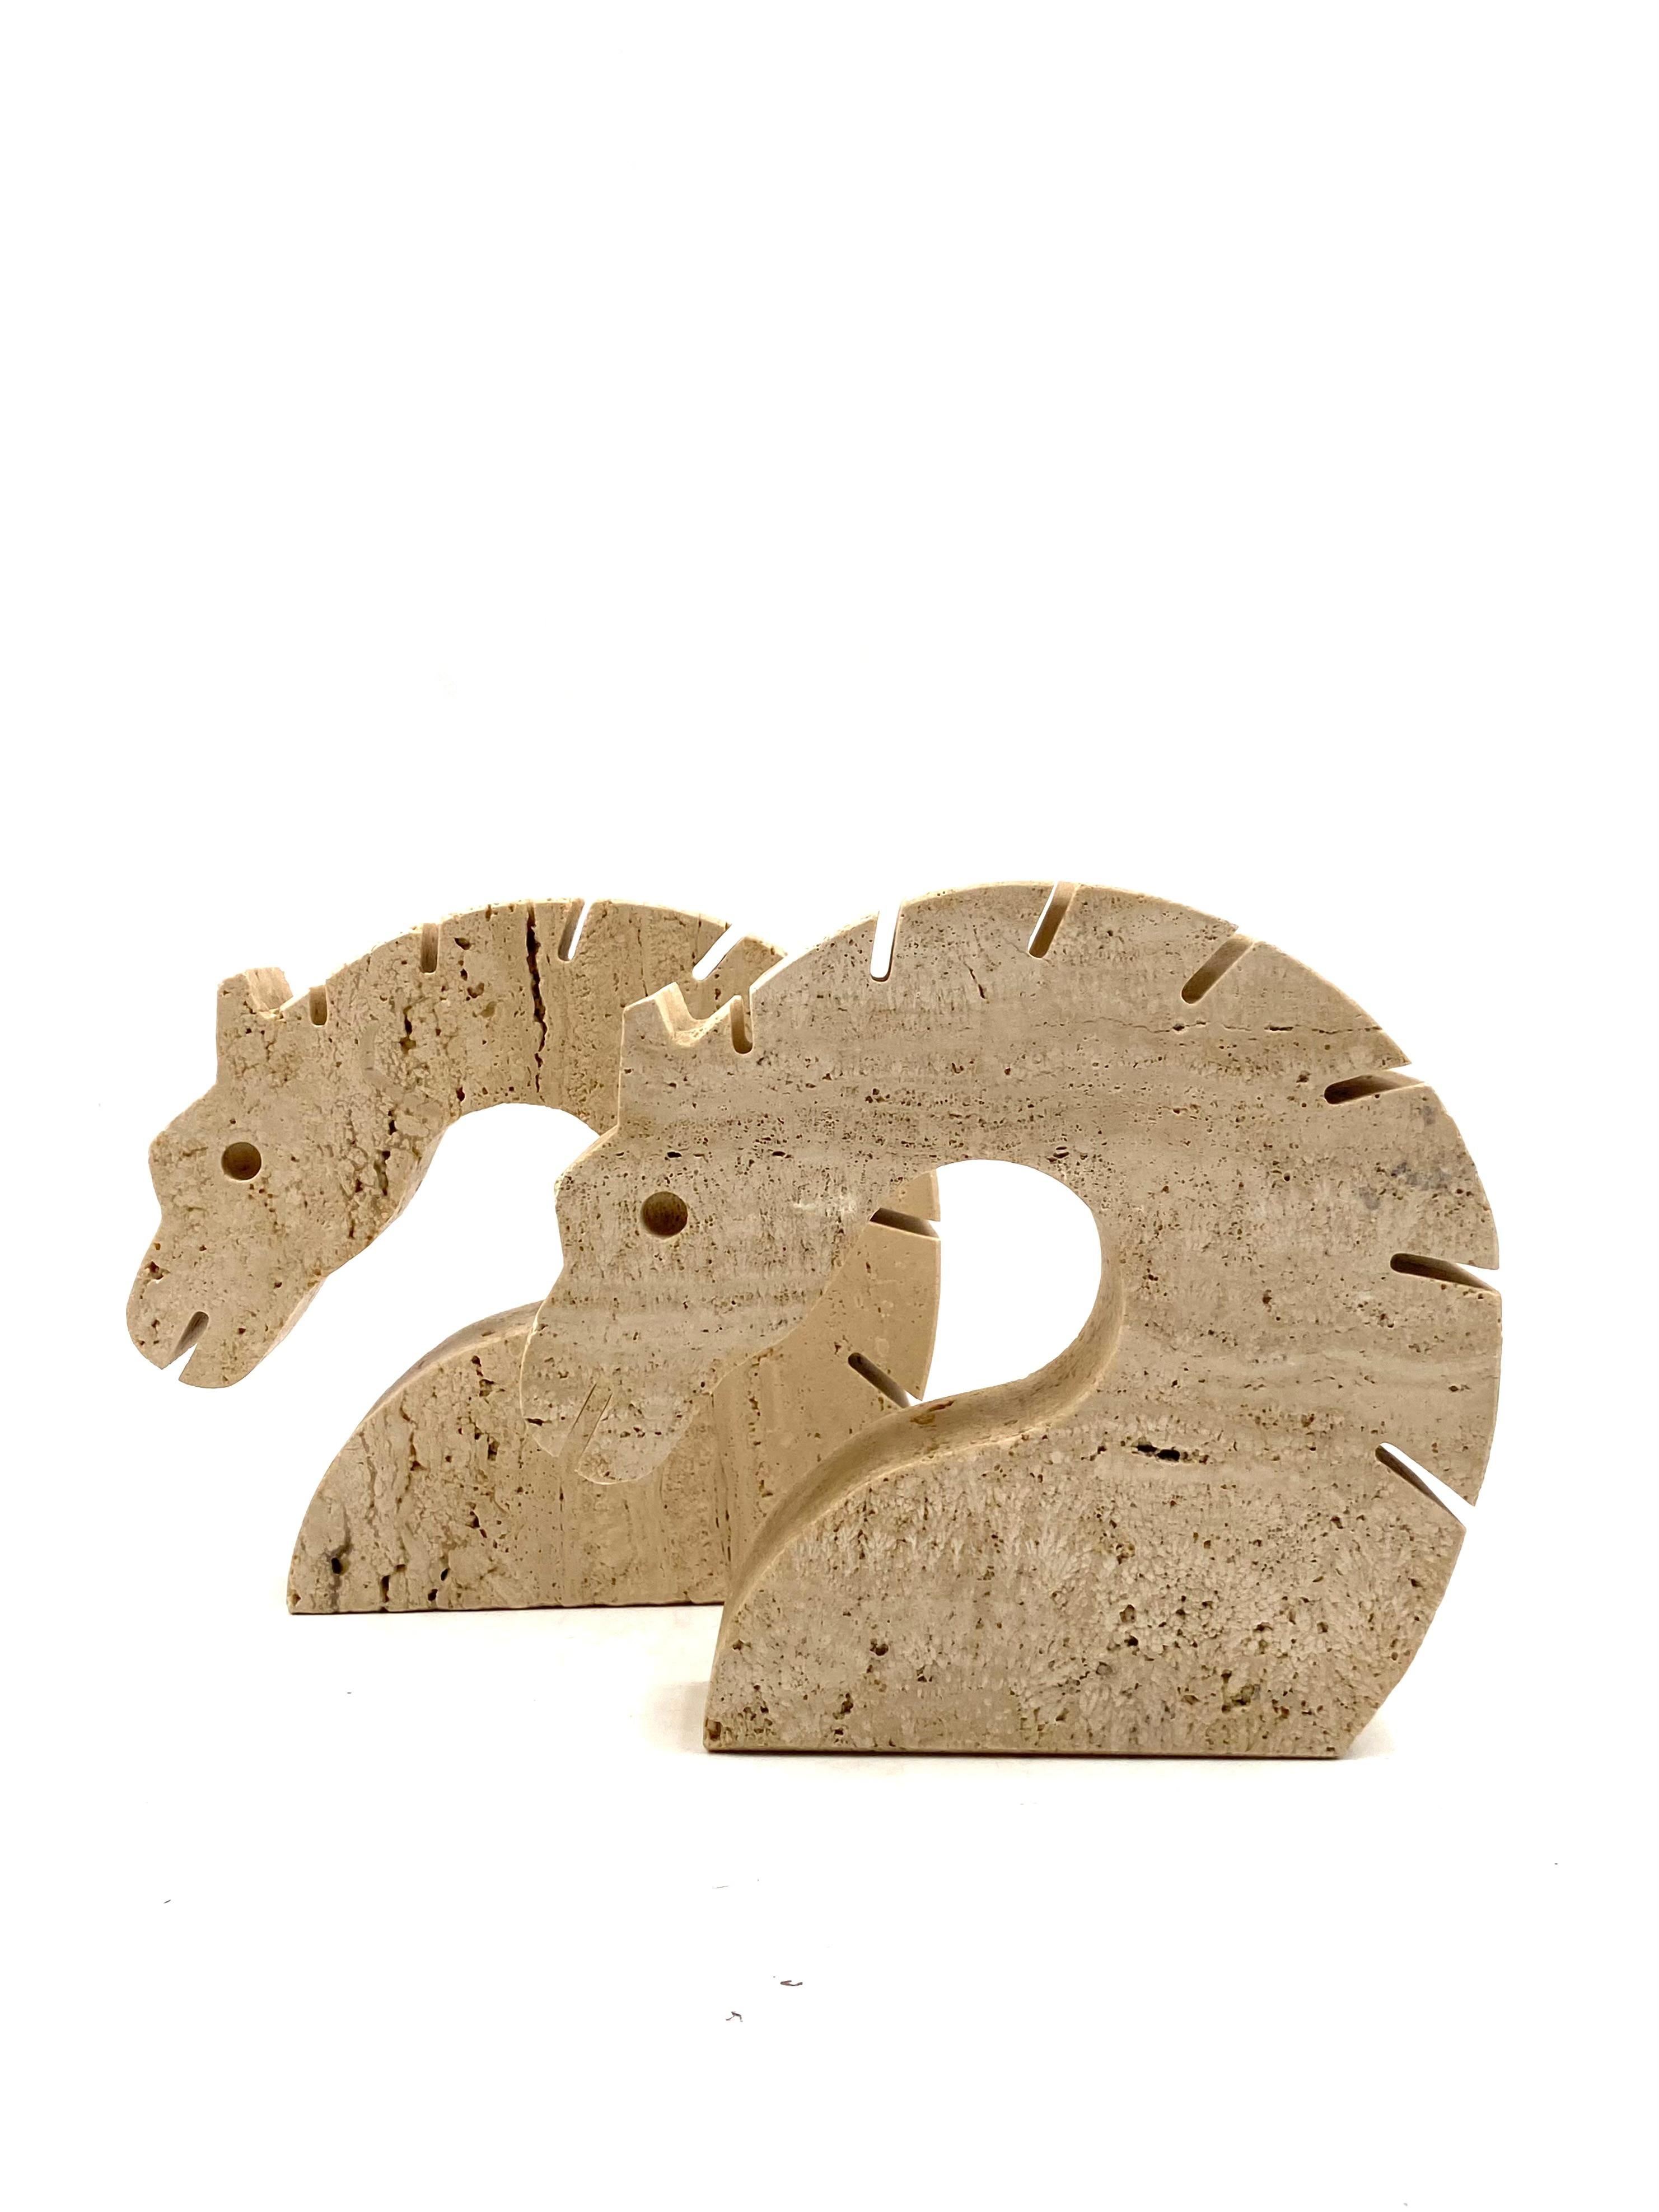 Brutalistische Pferde / Drachen Travertin Buchstützen

Entworfen und hergestellt von Fratelli Mannelli, Italien, 1970er Jahre.

H 16,5 cm 4 x 17 cm

Zustand: ausgezeichnet, entsprechend dem Alter und dem Gebrauch